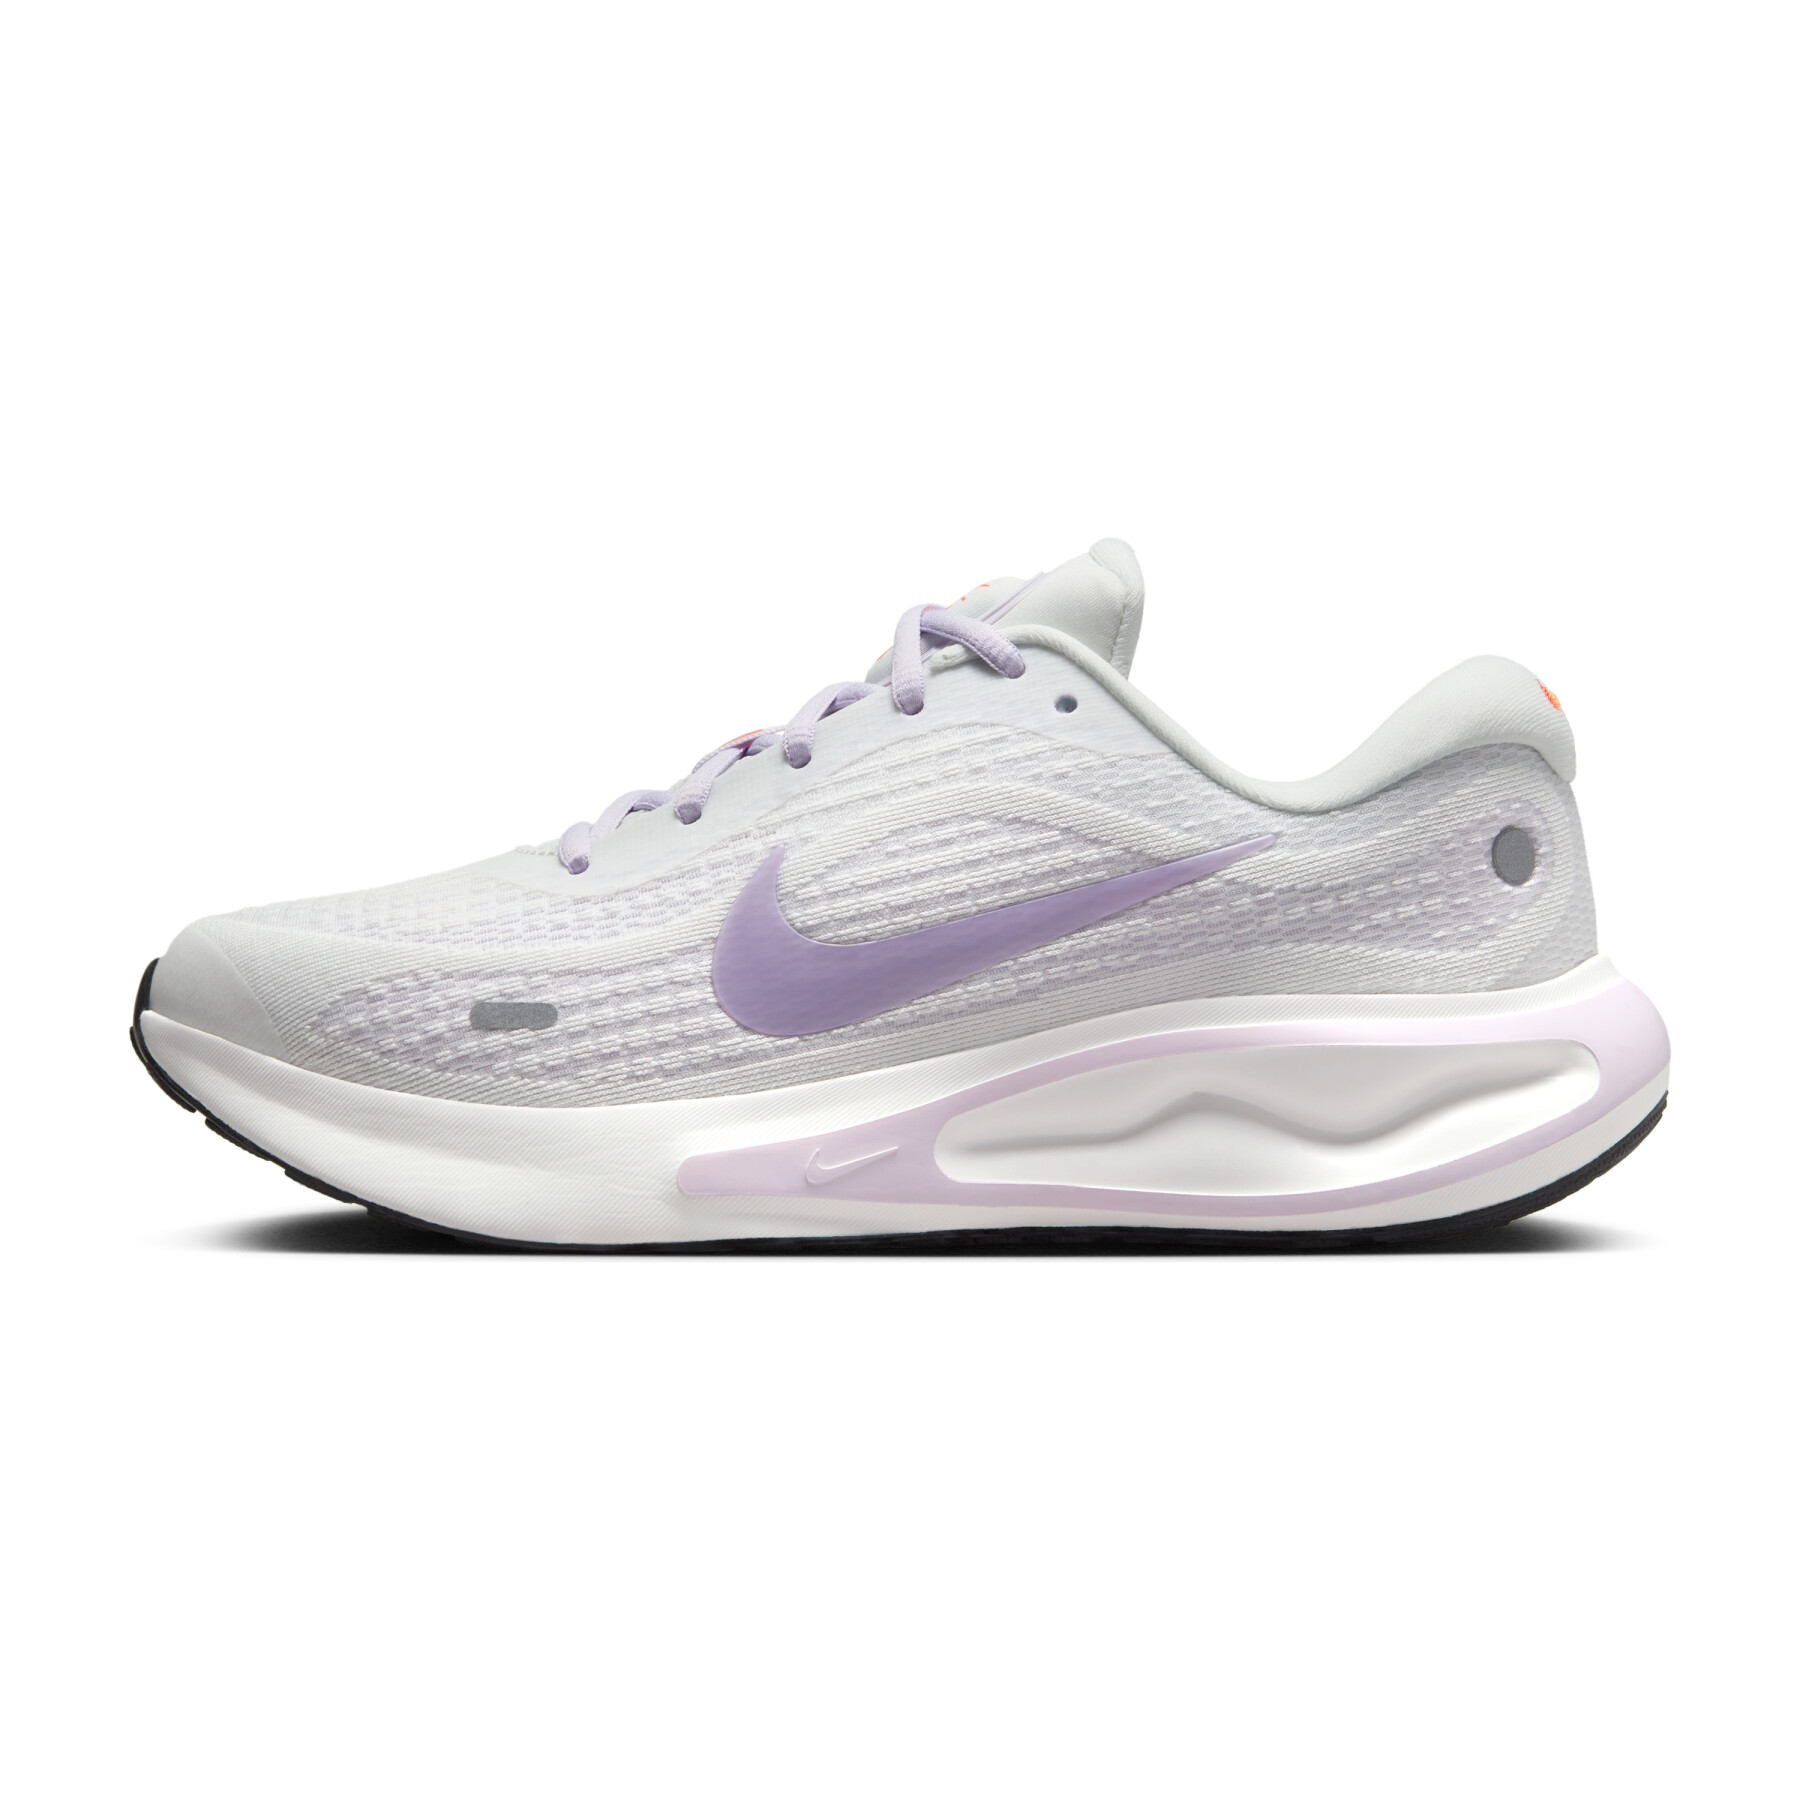 Chaussures de running femme Nike Journey Run